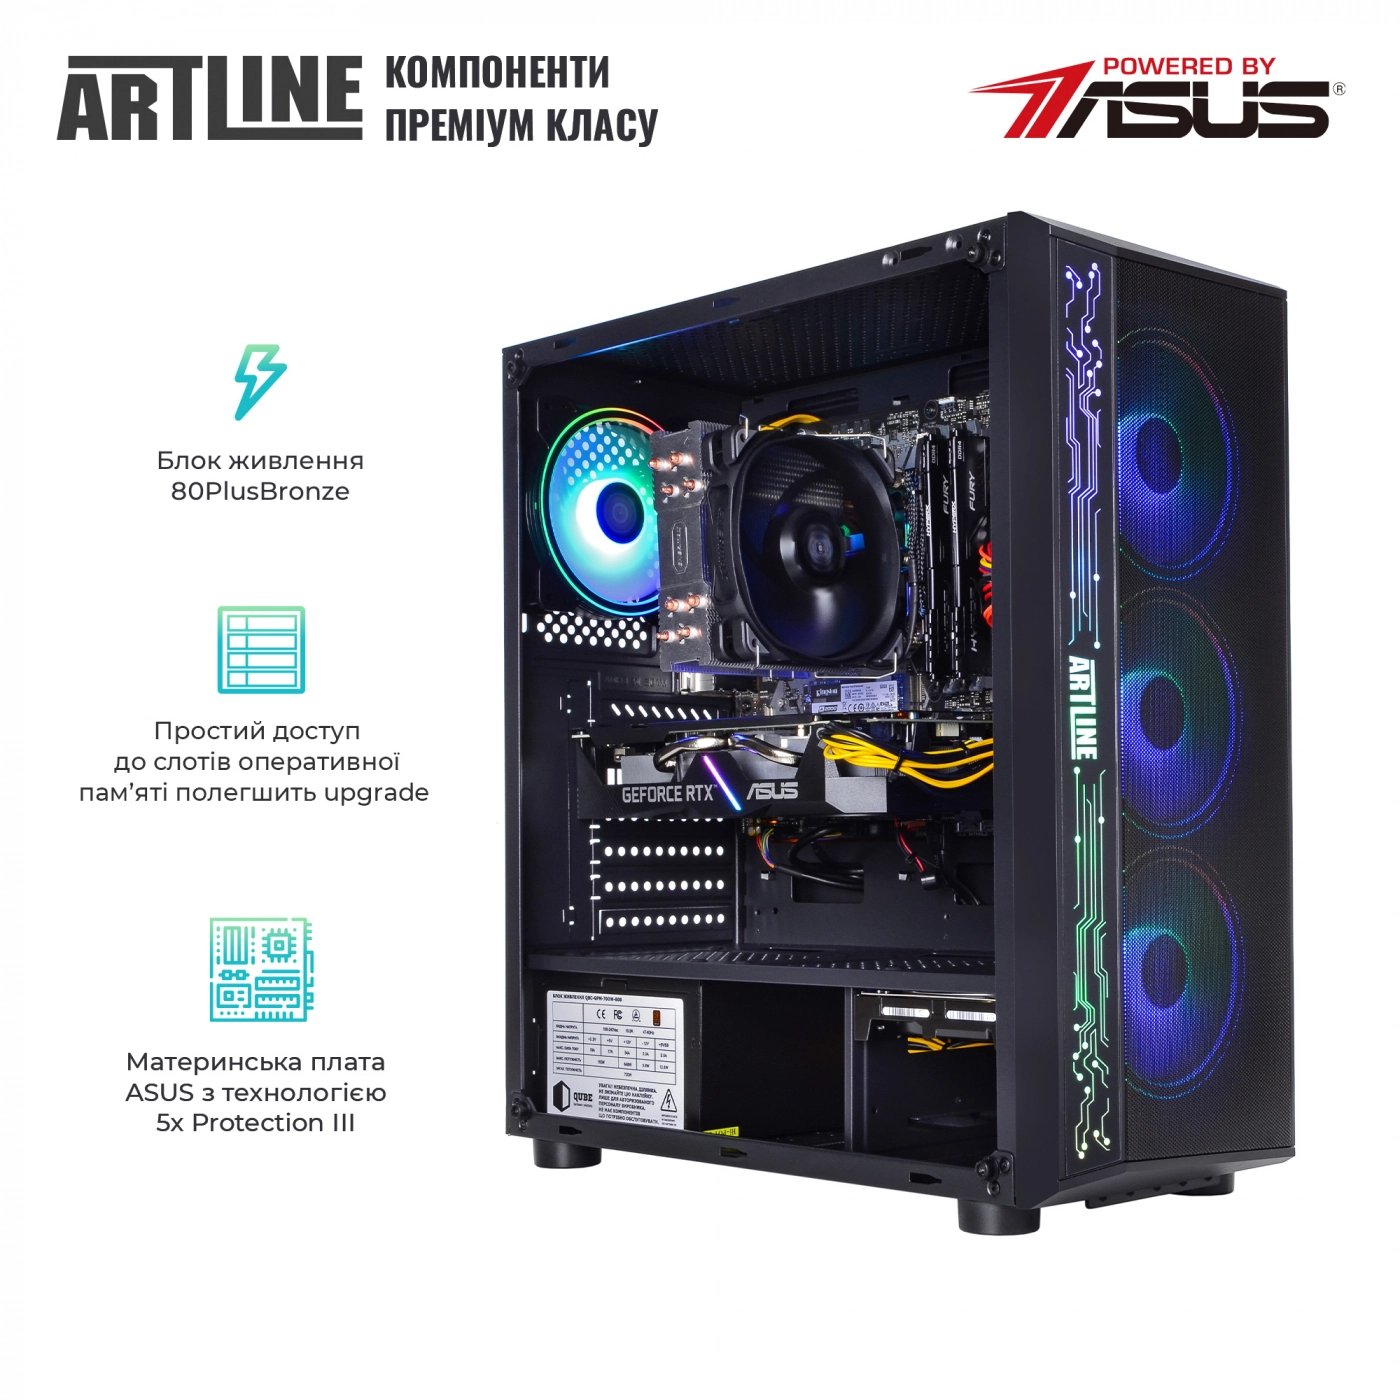 Купить Компьютер ARTLINE Gaming X55v41 - фото 2